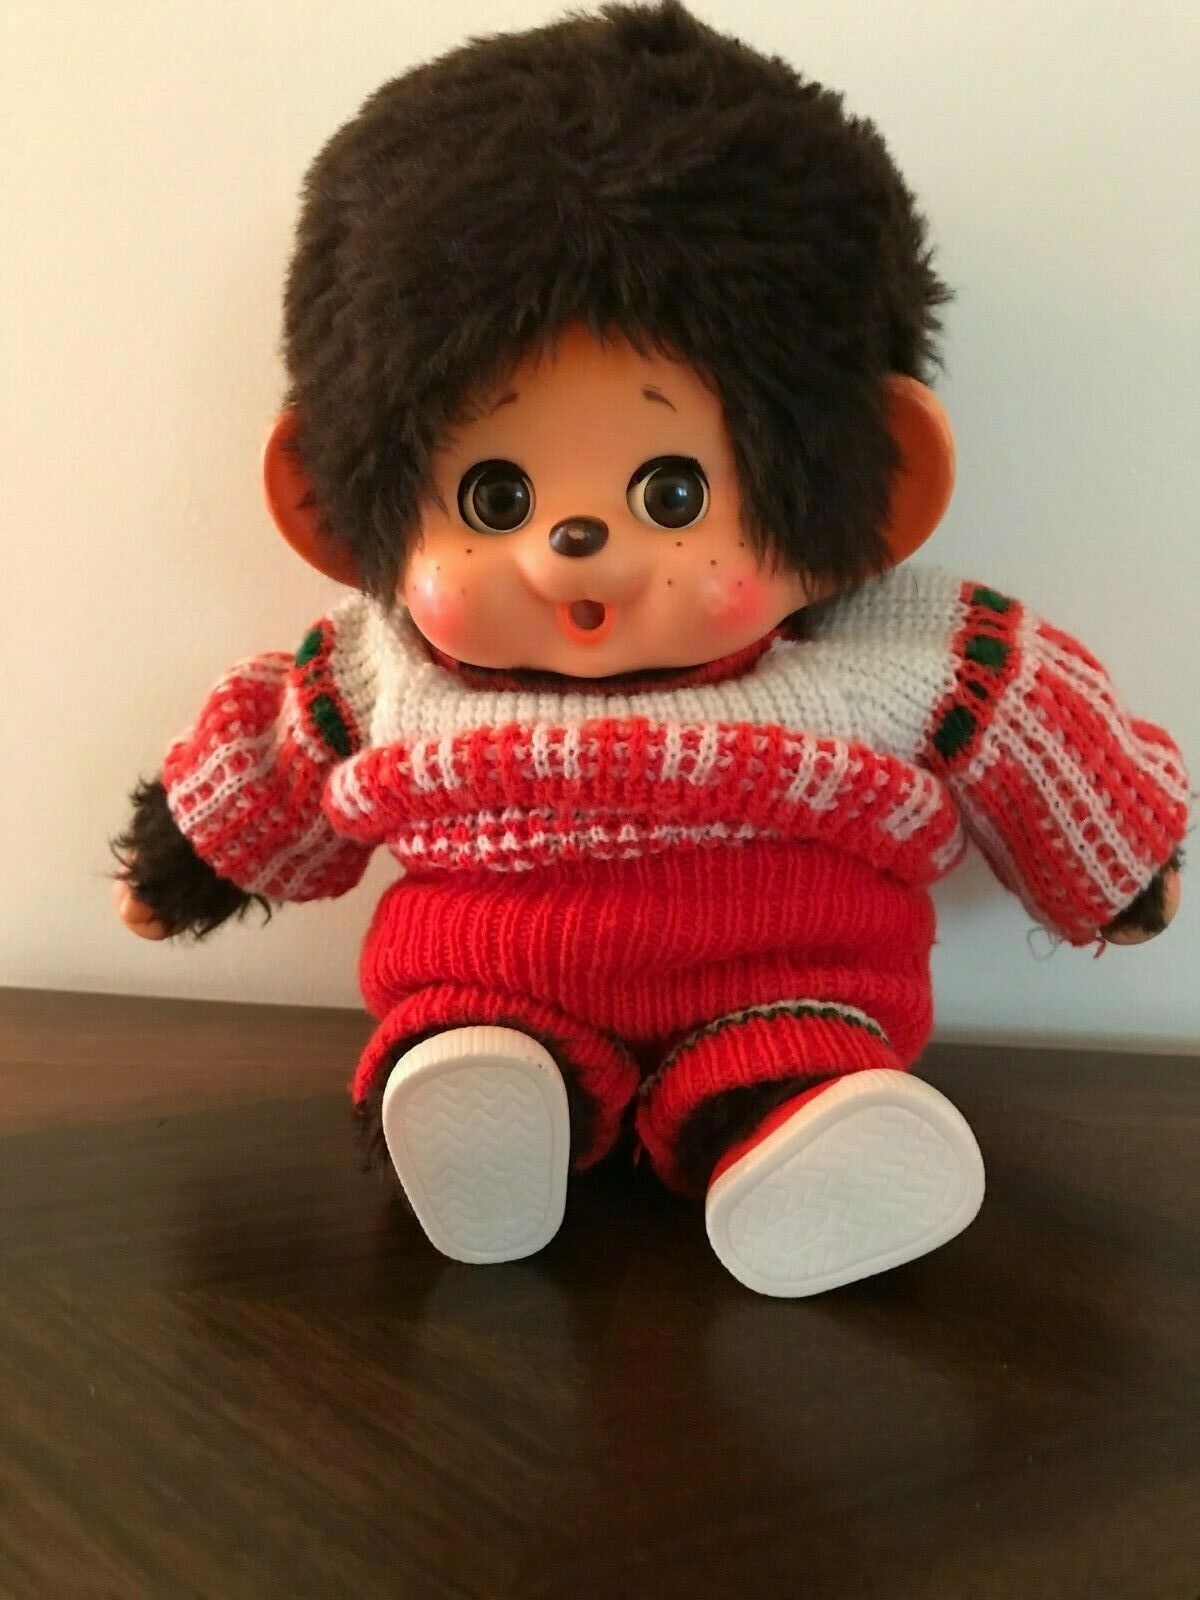 Sekiguchi Monchhichi Boy original 1974 label 18 inches large Japanese  vintage monkey doll